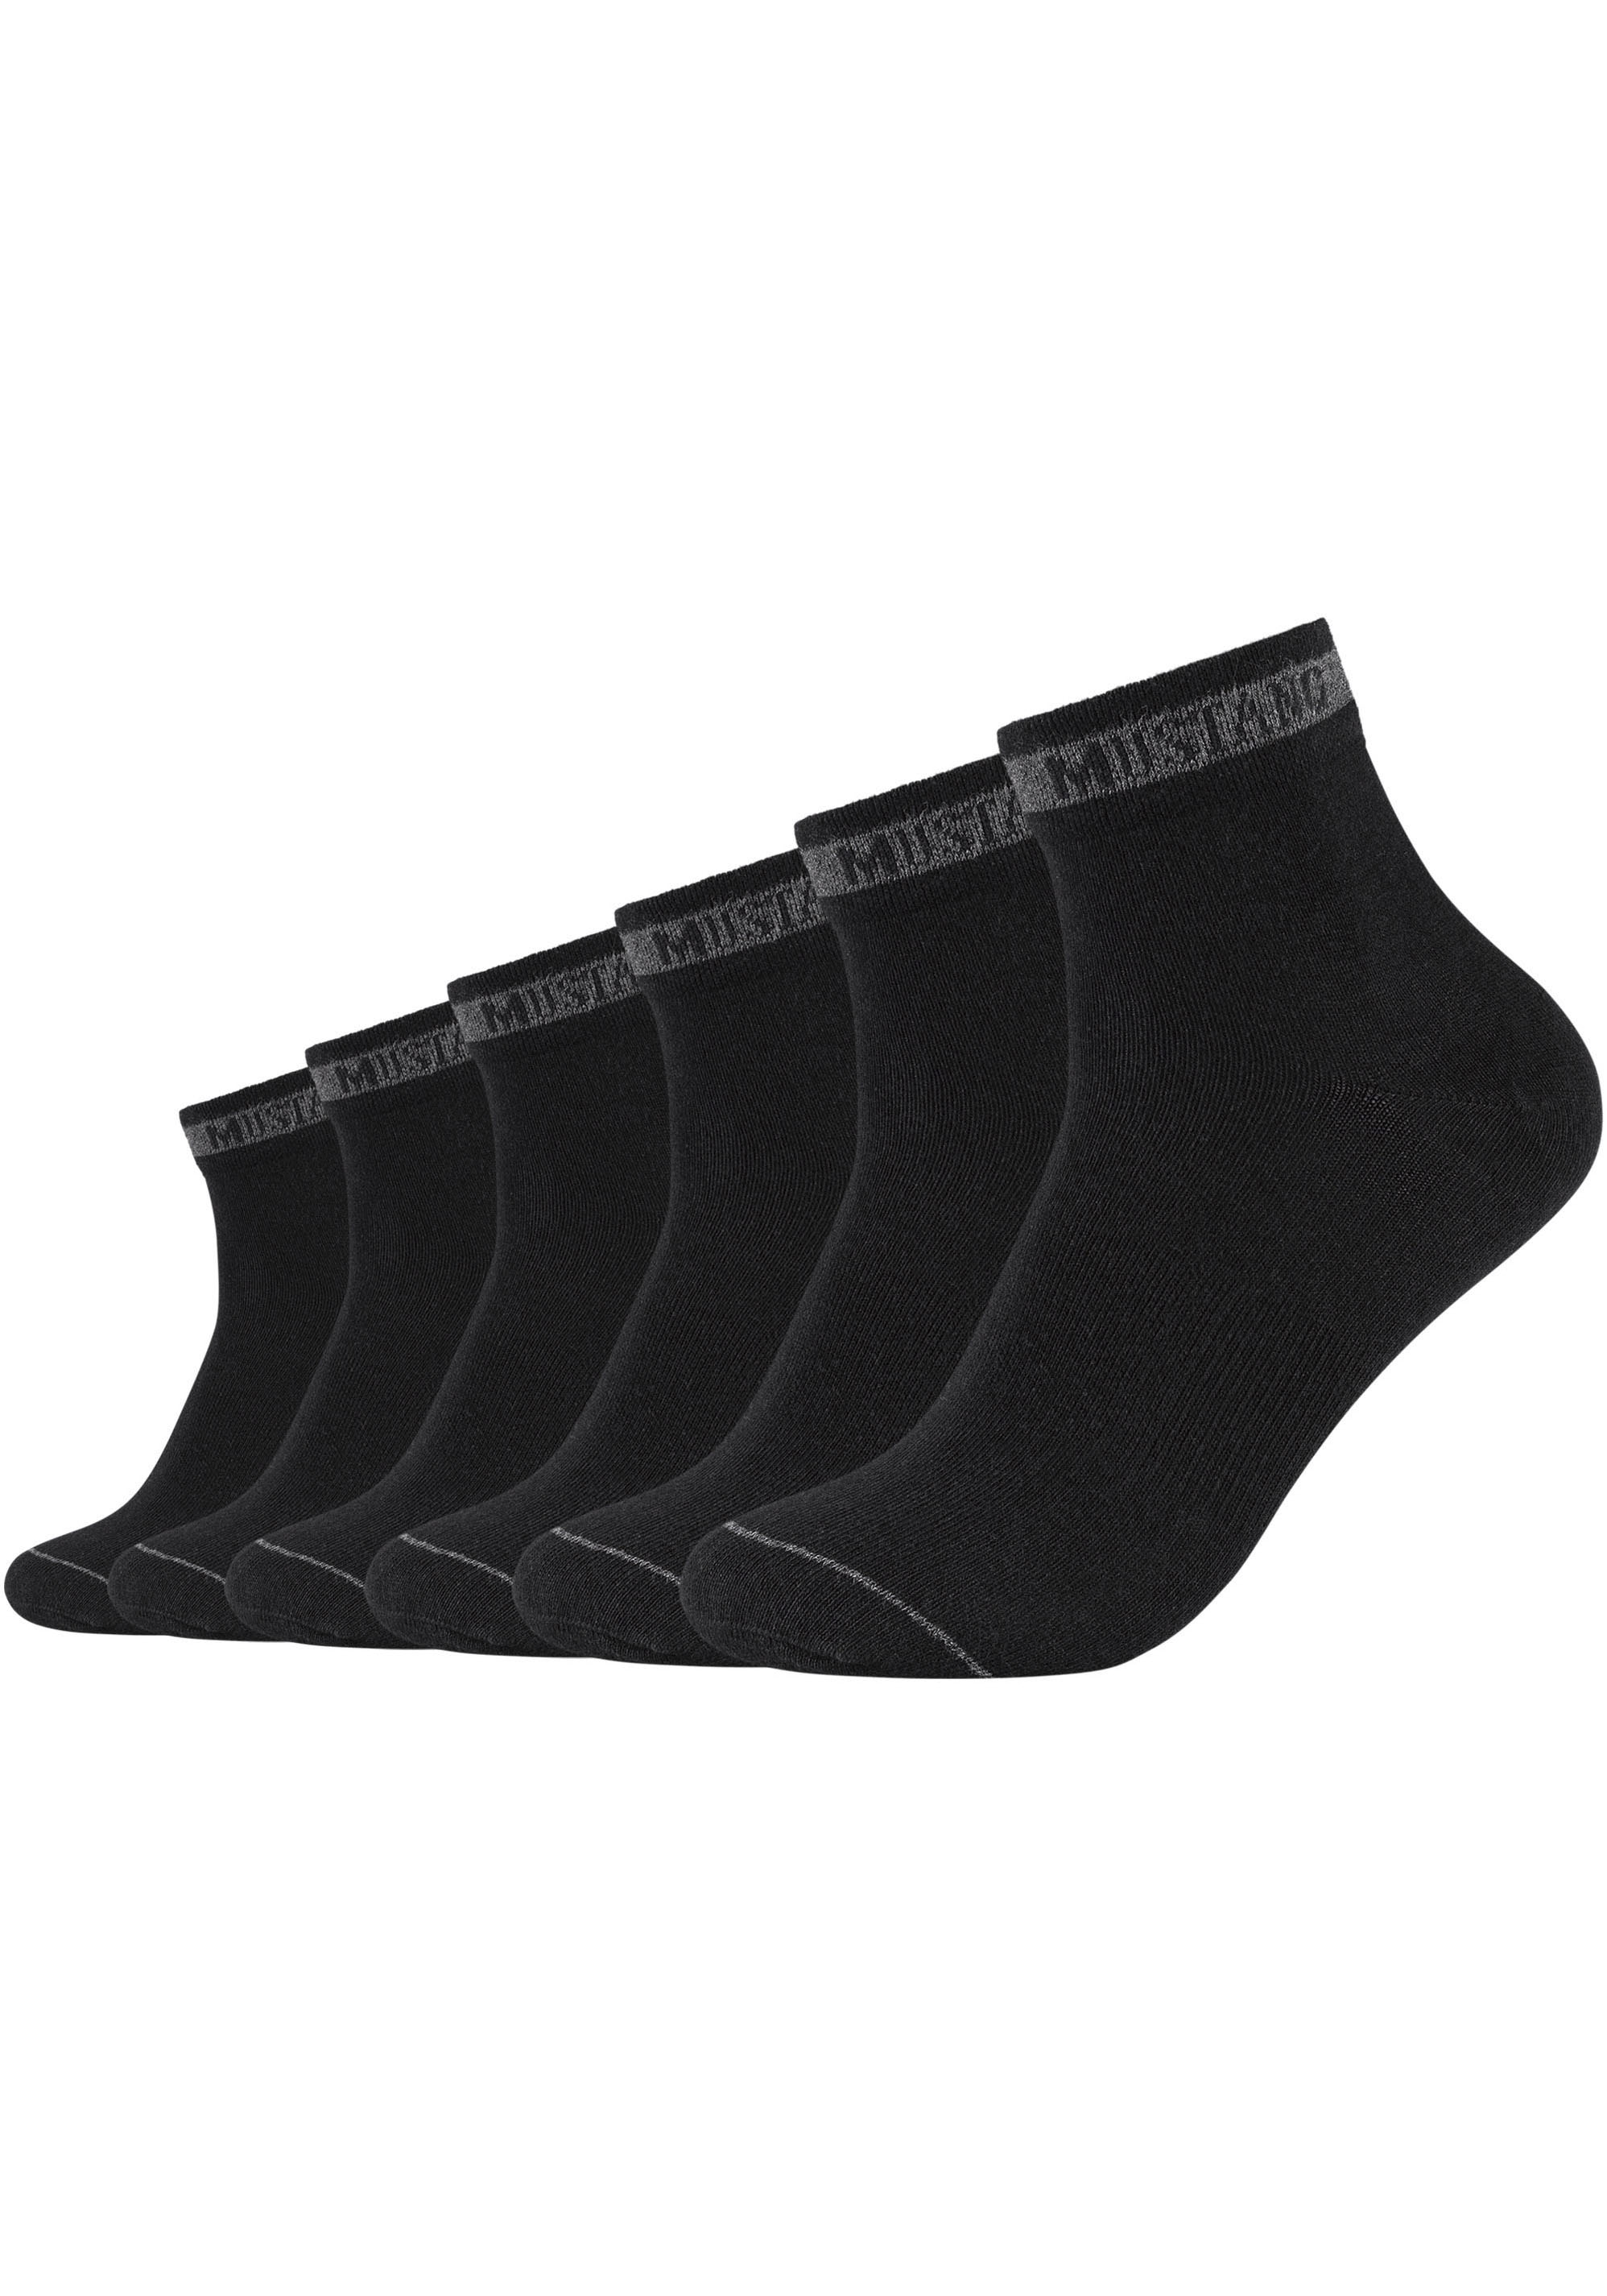 Kappa Socken, im vorteilhaften 12er Pack online bei